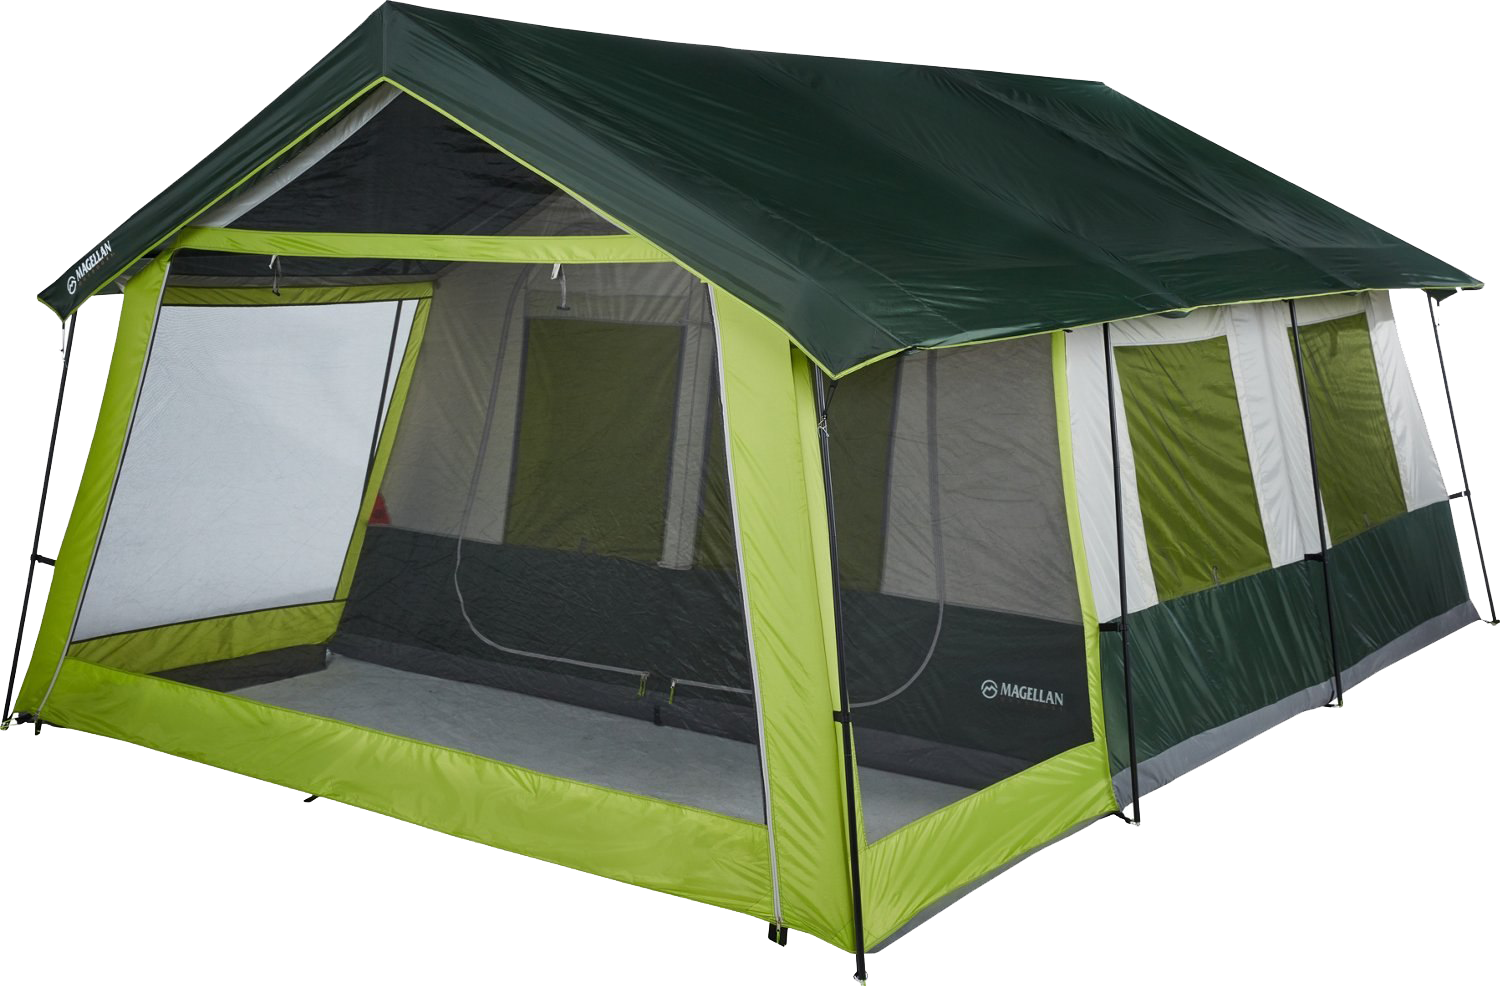 Лагерь модульный (шатер и 2 палатки) Nash Base Camp. Quechua mh100 палатка. Палатка кемпинг домик зеленый xyp602. Палатка best Camp 165*165.